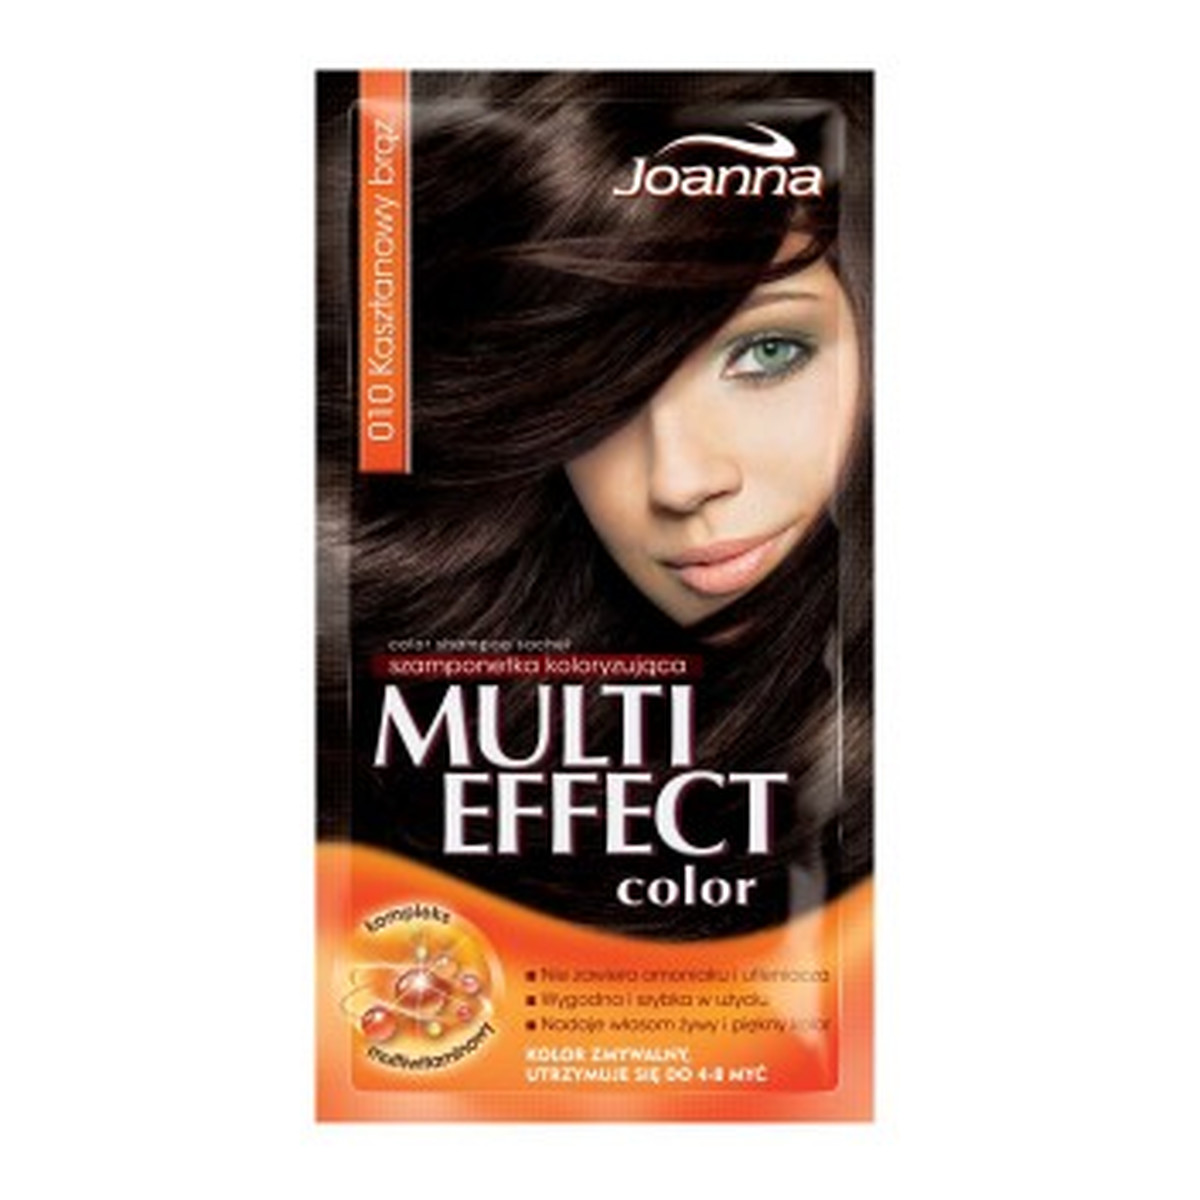 Joanna Multi Effect Color Szamponetka Koloryzująca Kasztanowy Brąz (10) 35g